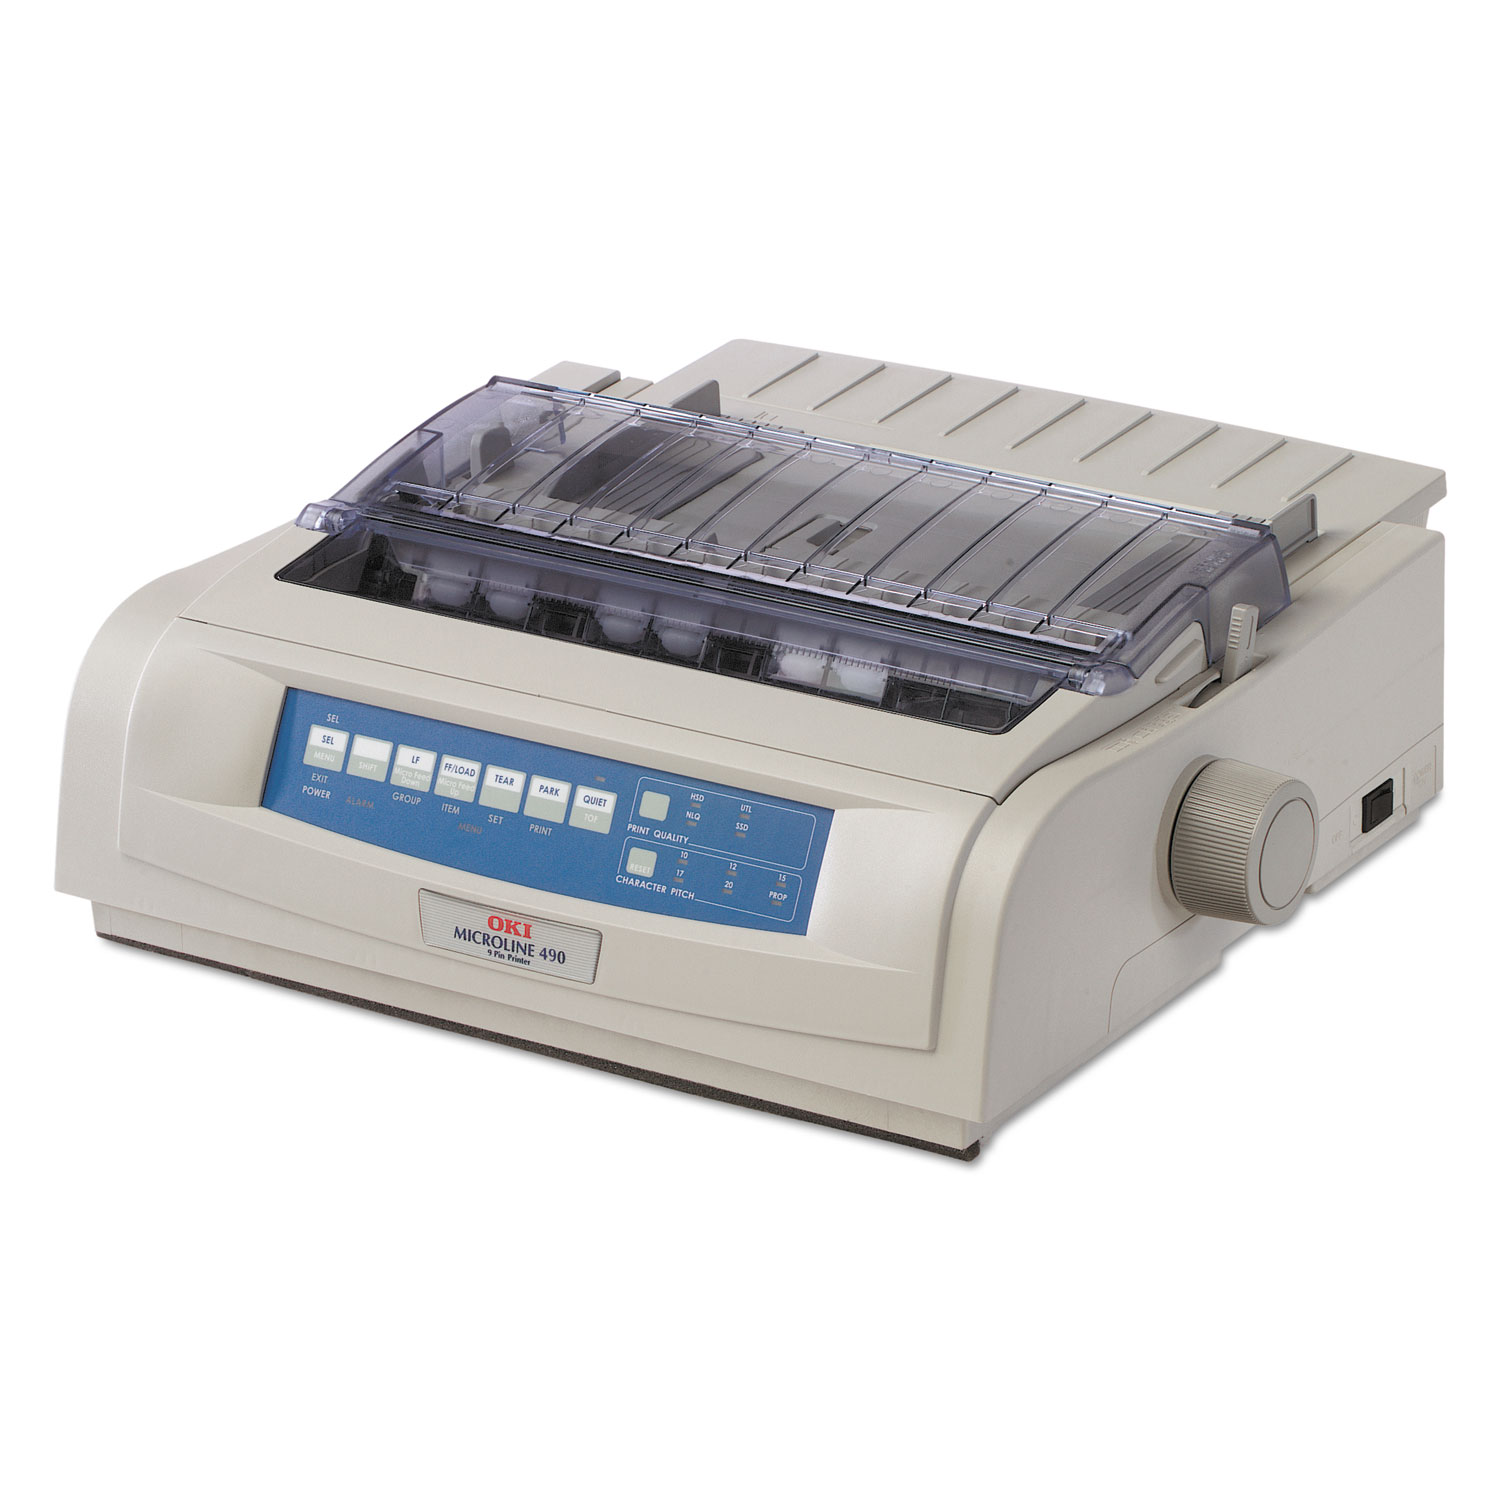 Microline 490n Dot Matrix Printer